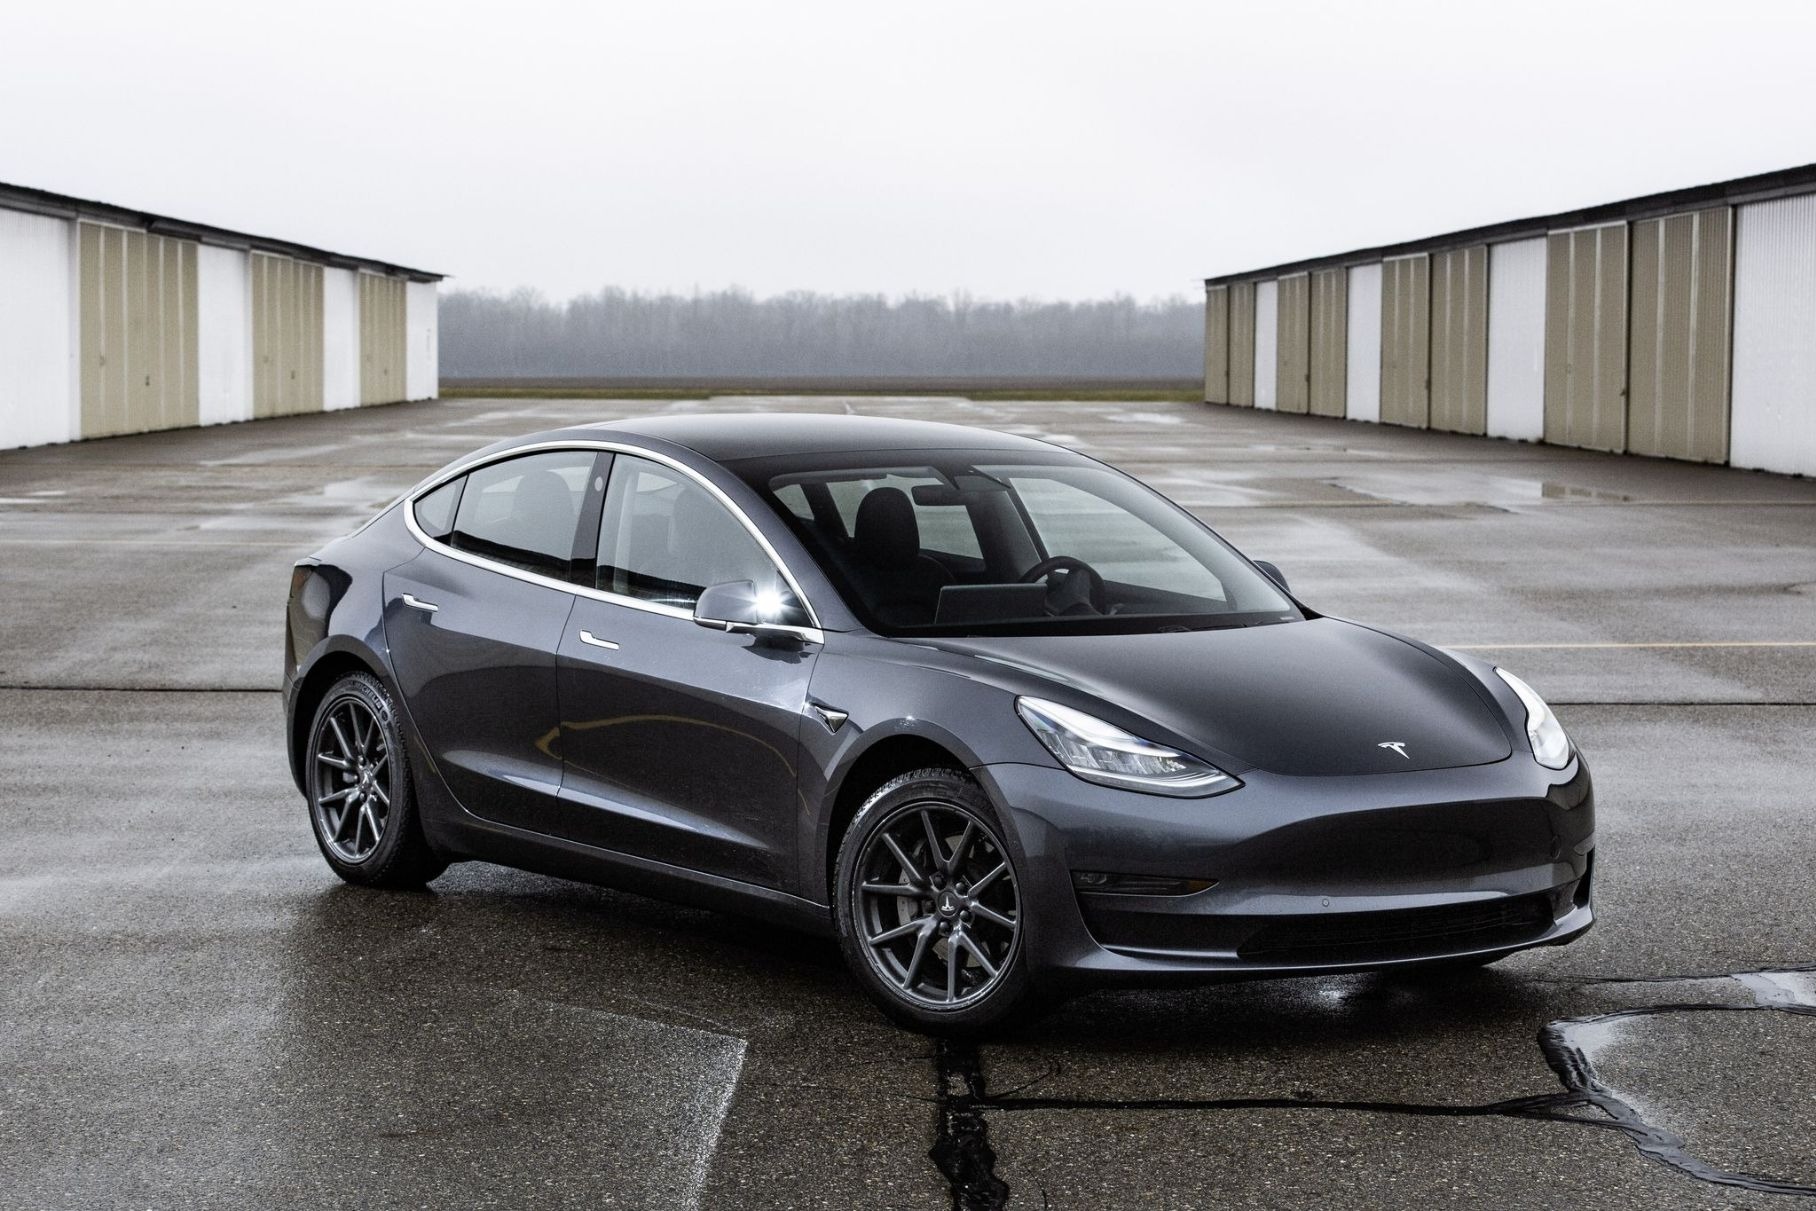 Tesla wycofuje prawie pół miliona samochodów Model 3 i Model S z powodu wad technicznych